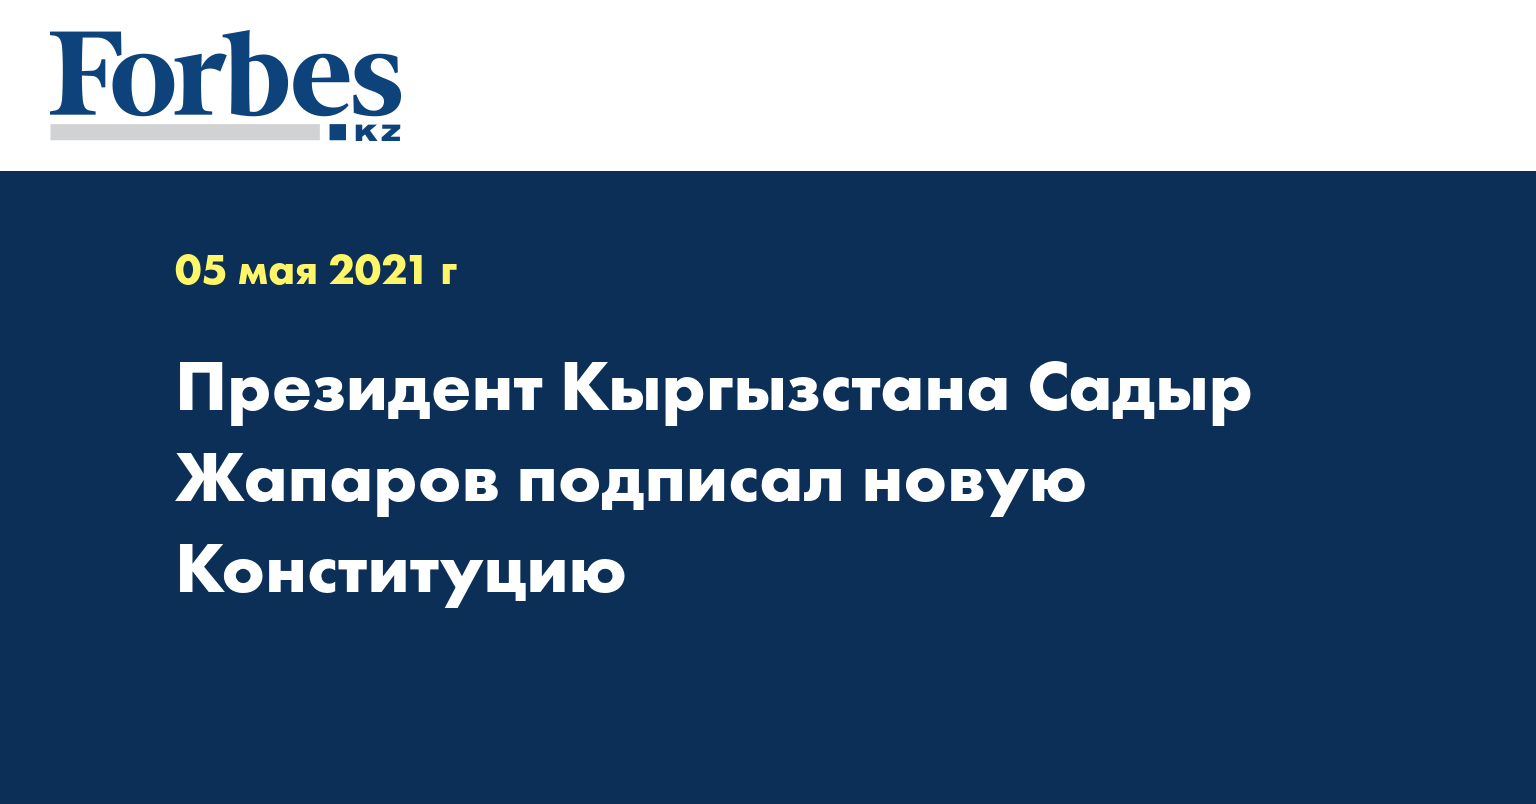 Президент Кыргызстана Садыр Жапаров подписал новую Конституцию